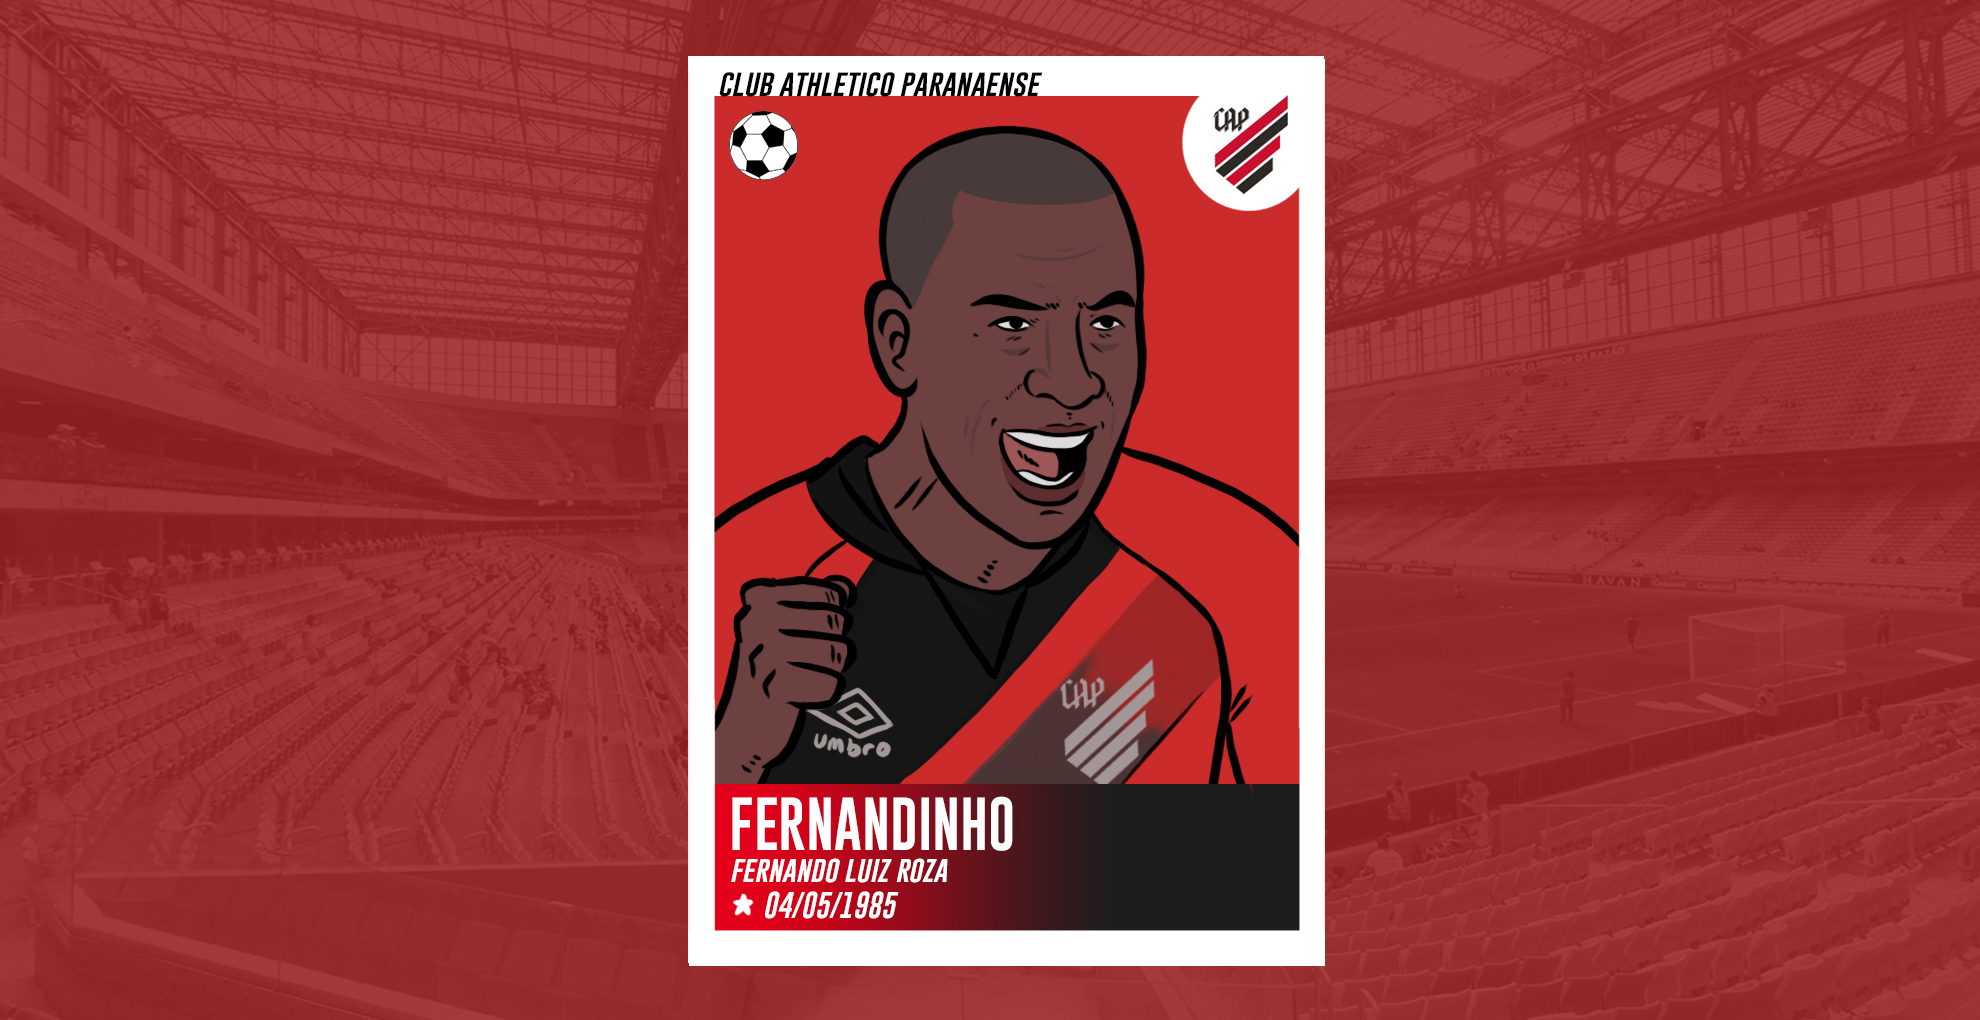  Fernandinho, o gênio atleticano  